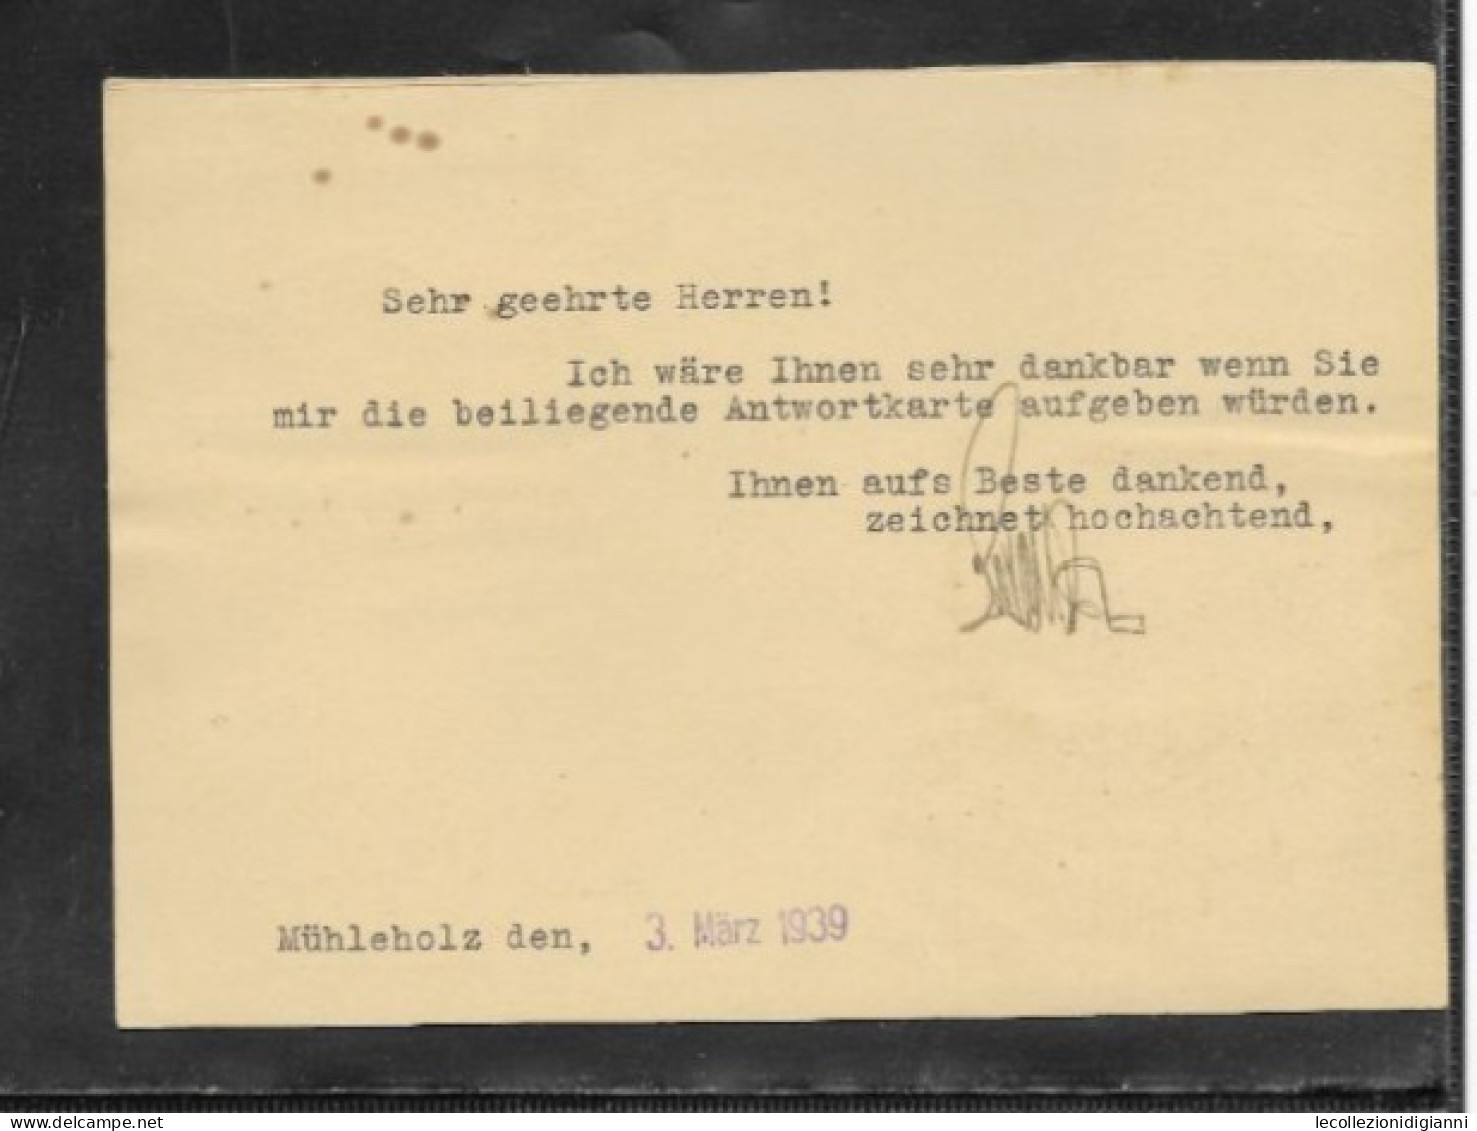 1034) Liechtenstein Postkarte Mit Bezahlter Antwort 1939 Einschreiben Von Vaduz Nach Eger Sudetenland - Covers & Documents